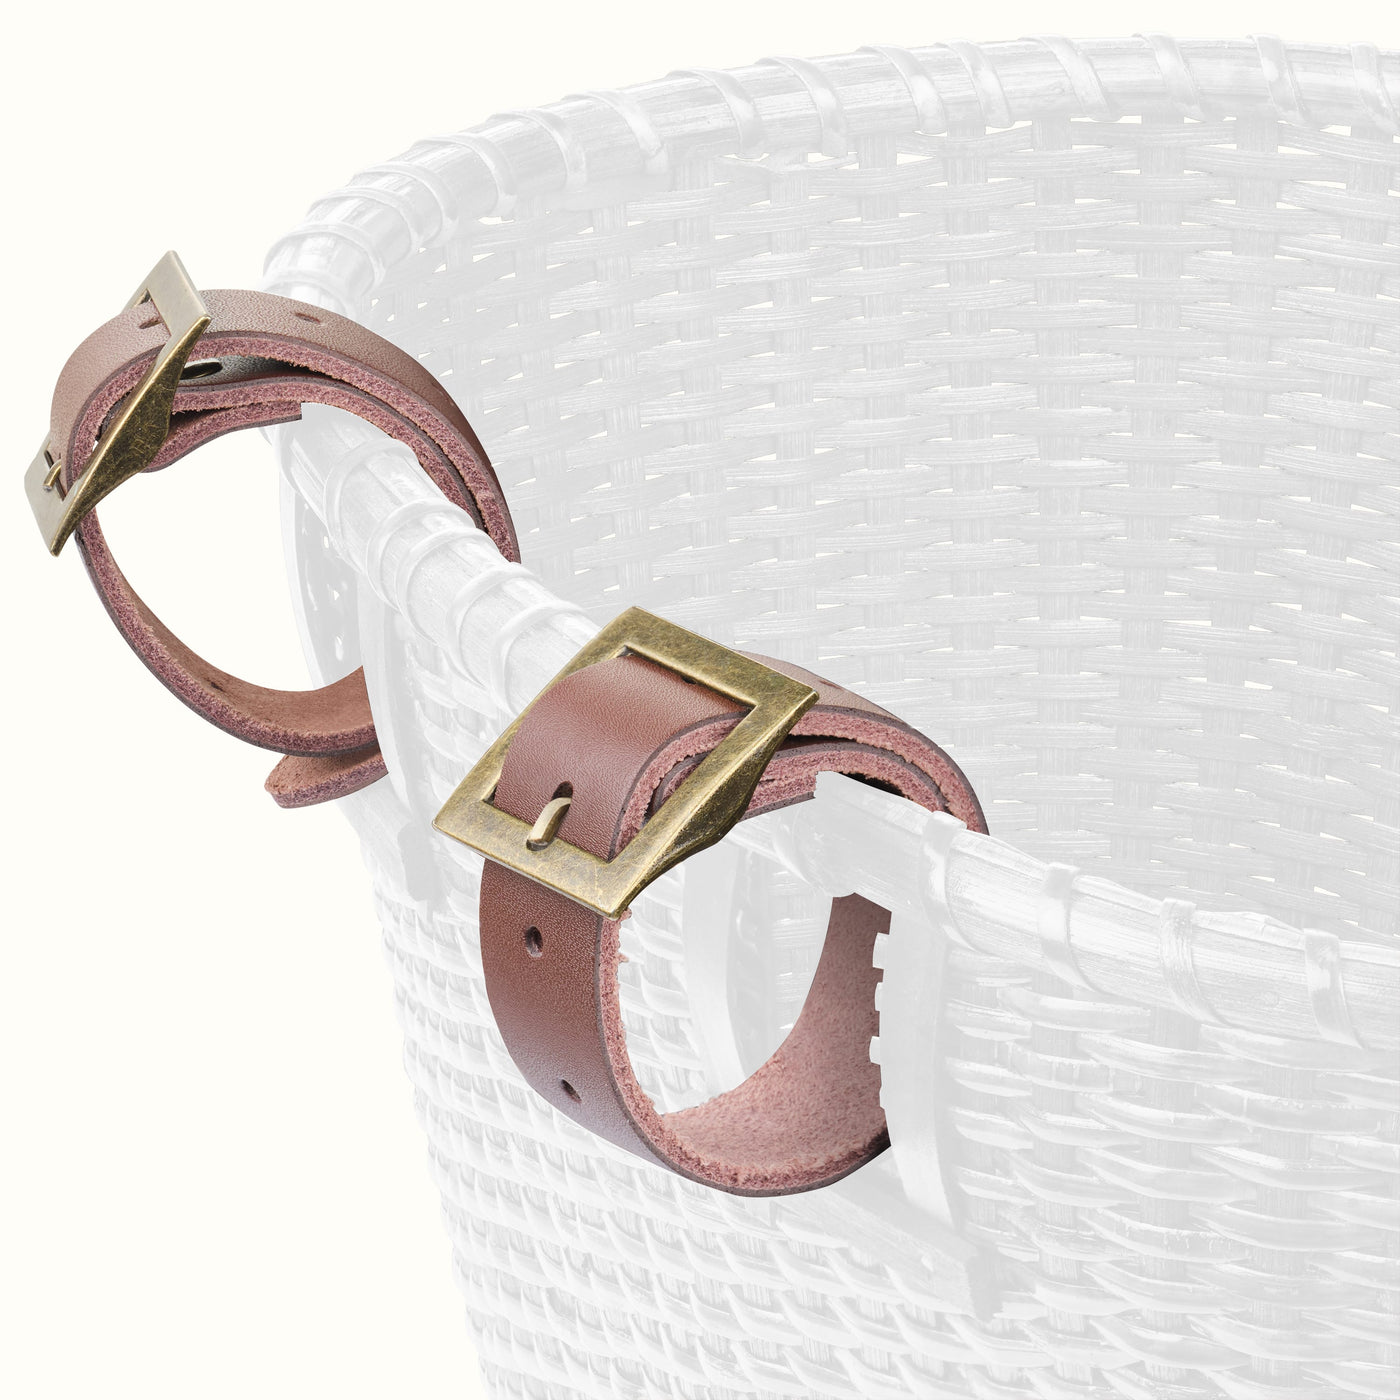 Dreamcatcher Handwoven Cane Basket | White